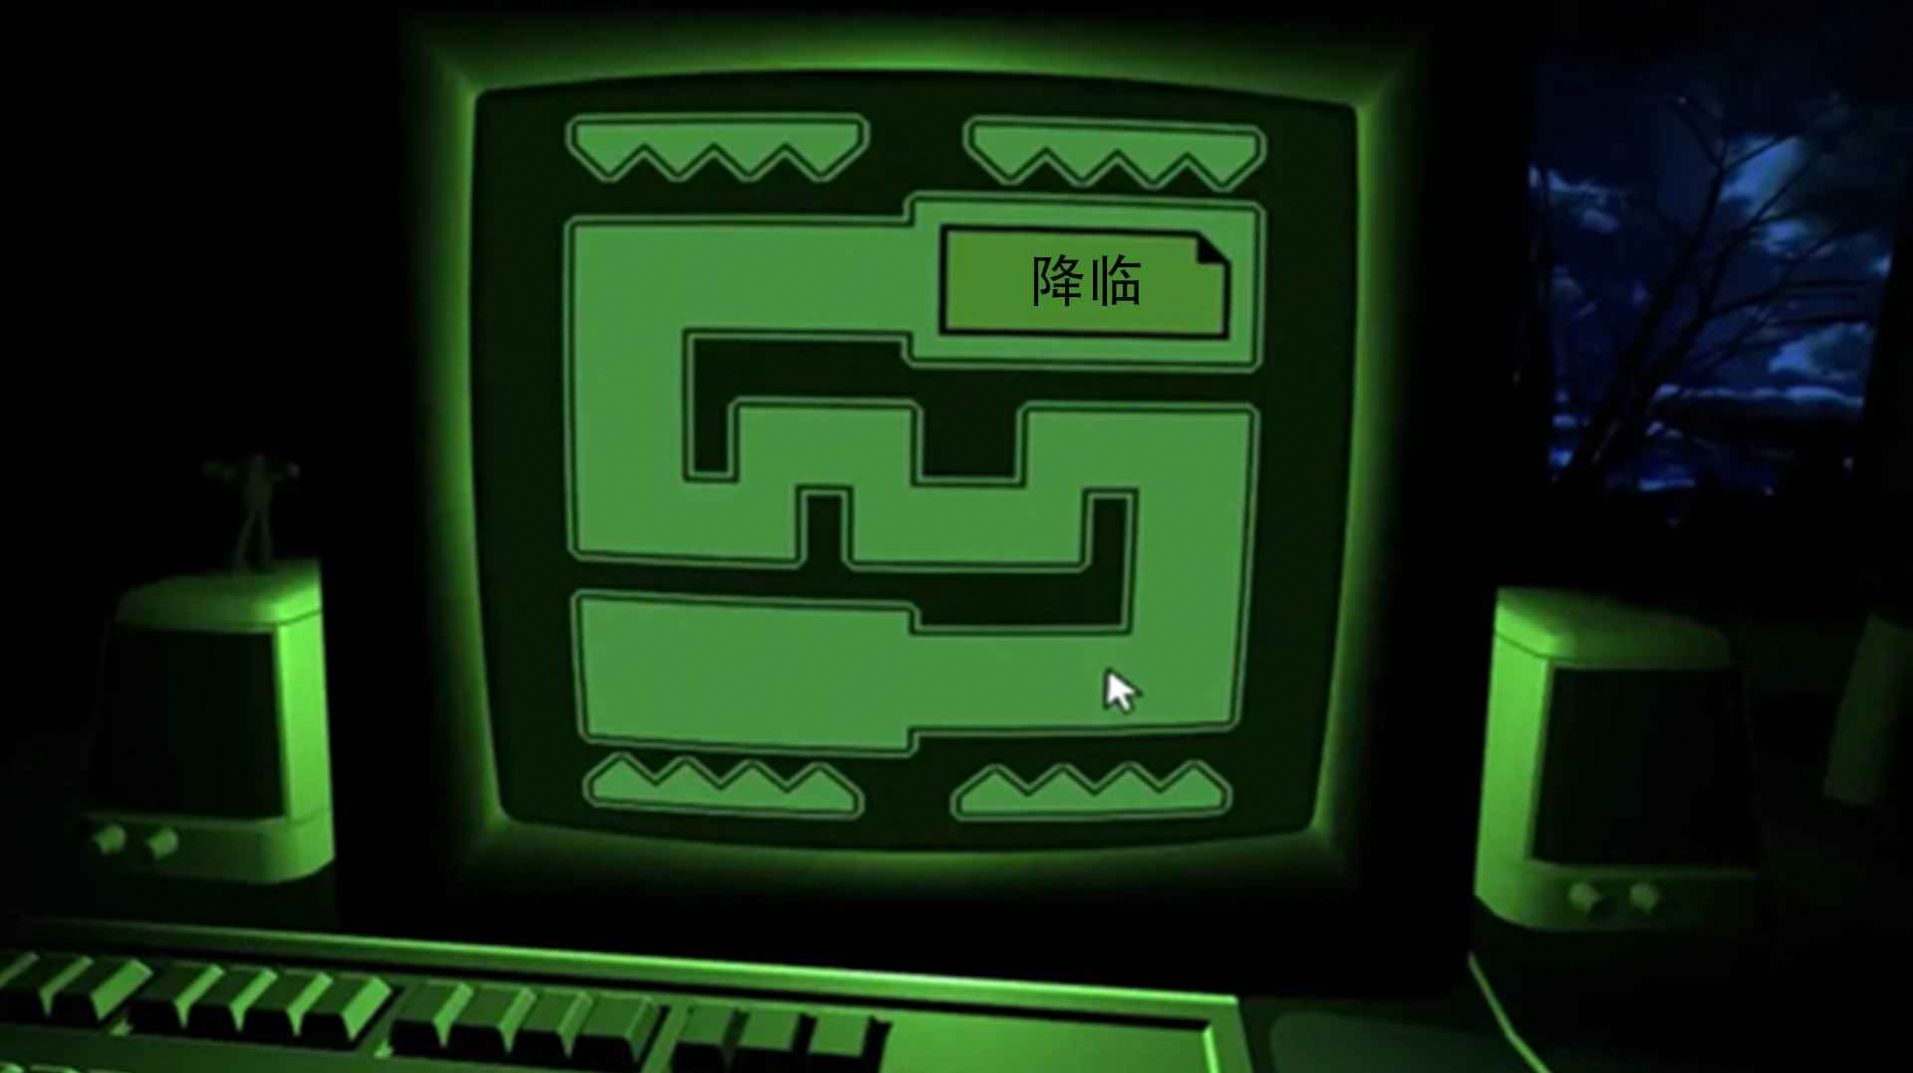 密室解谜逃脱dreader中文版下载,密室解谜逃脱dreader游戏中文完整版 v1.0